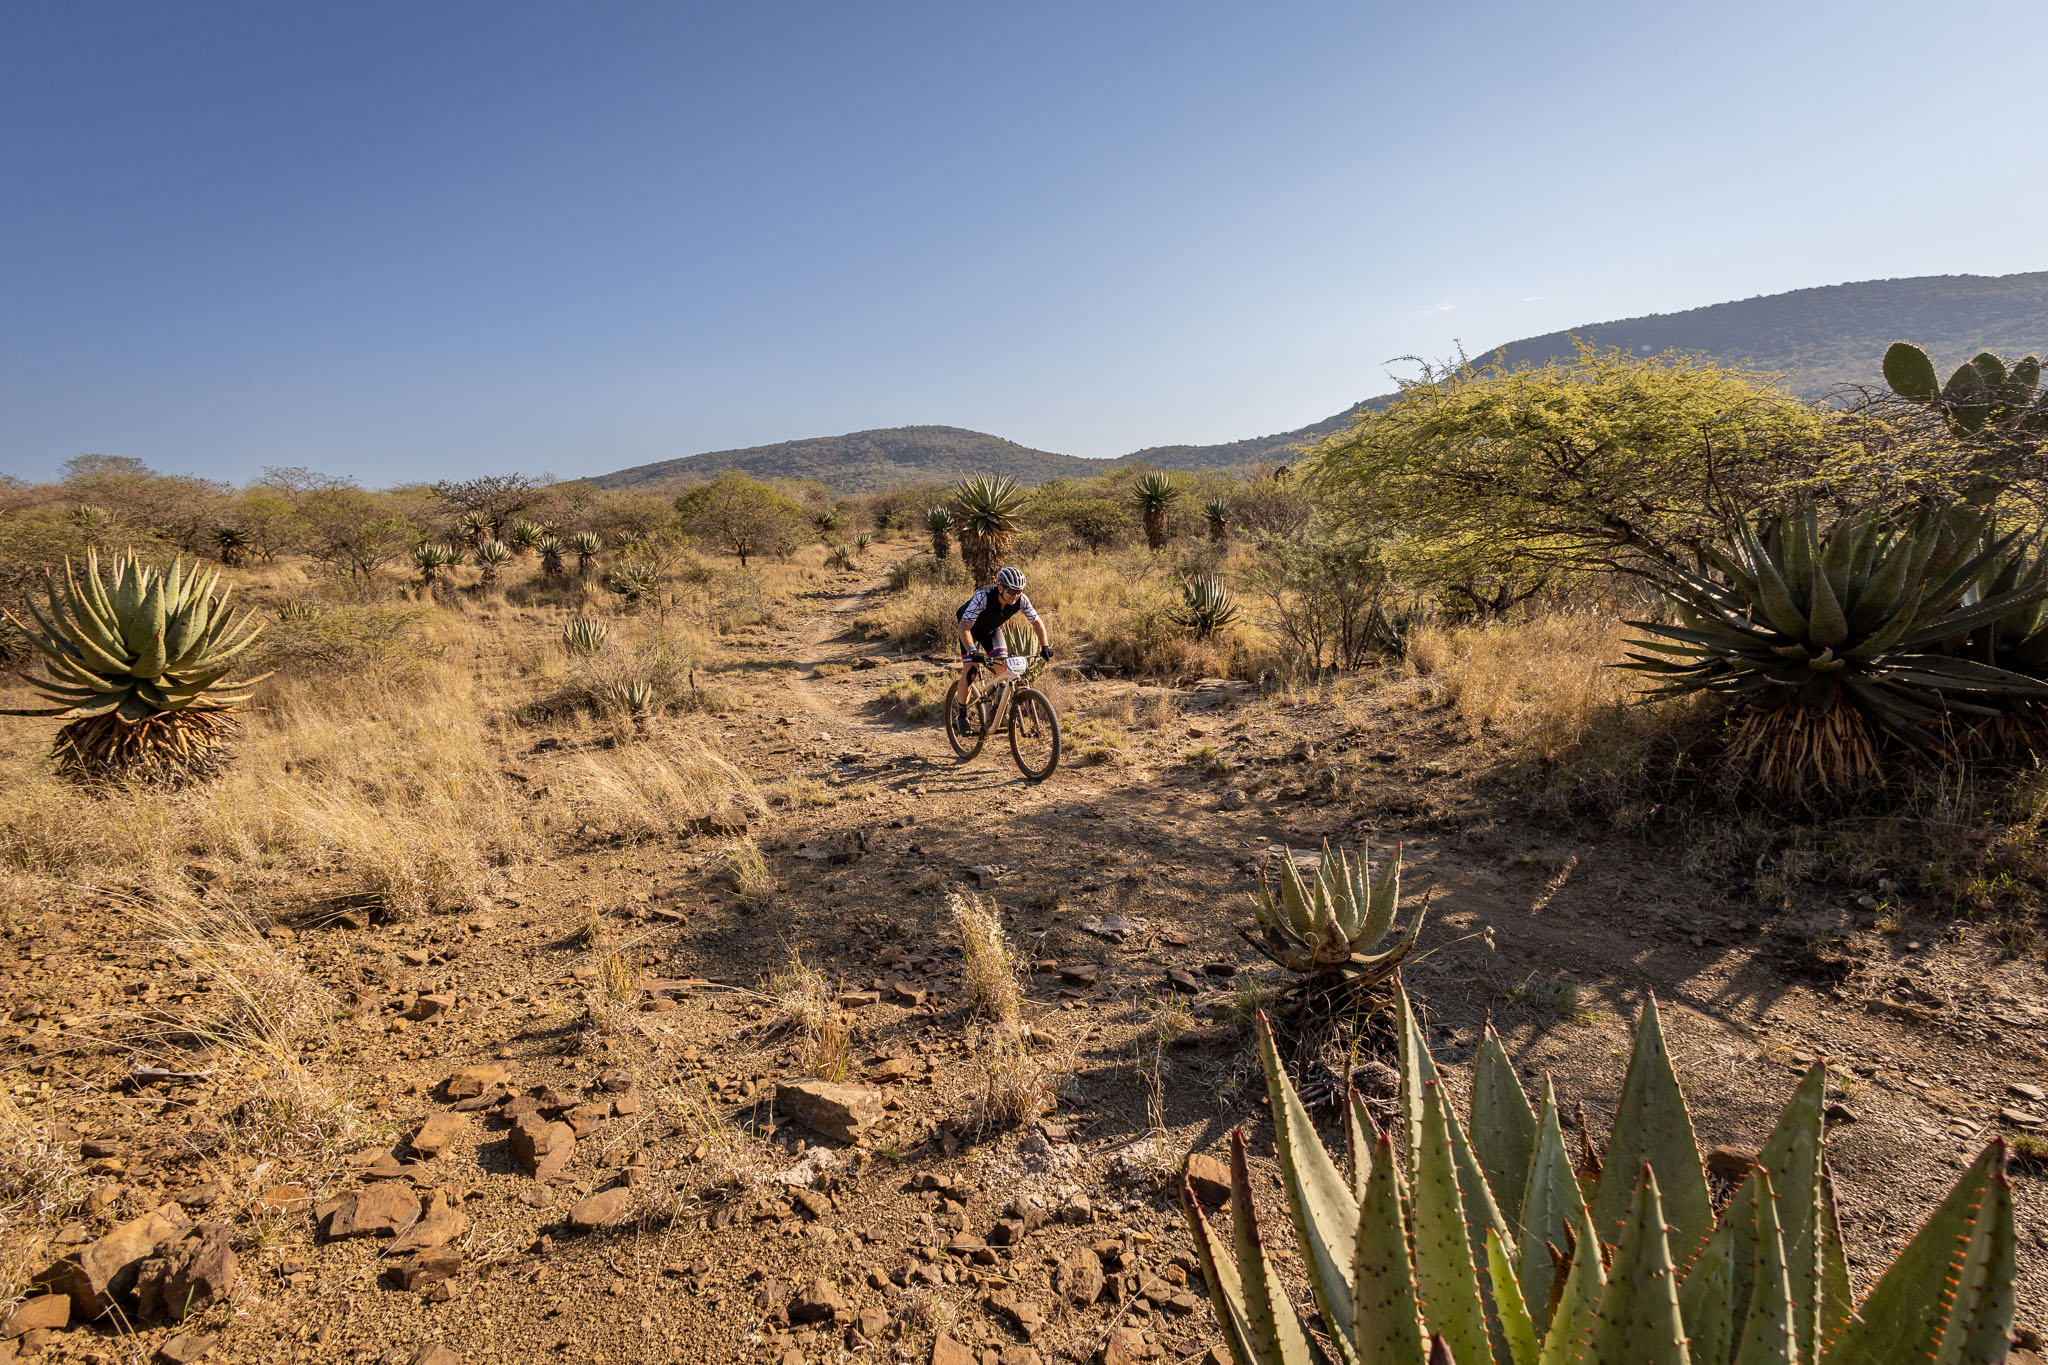 Bushveld biking at go2berg – Day 5